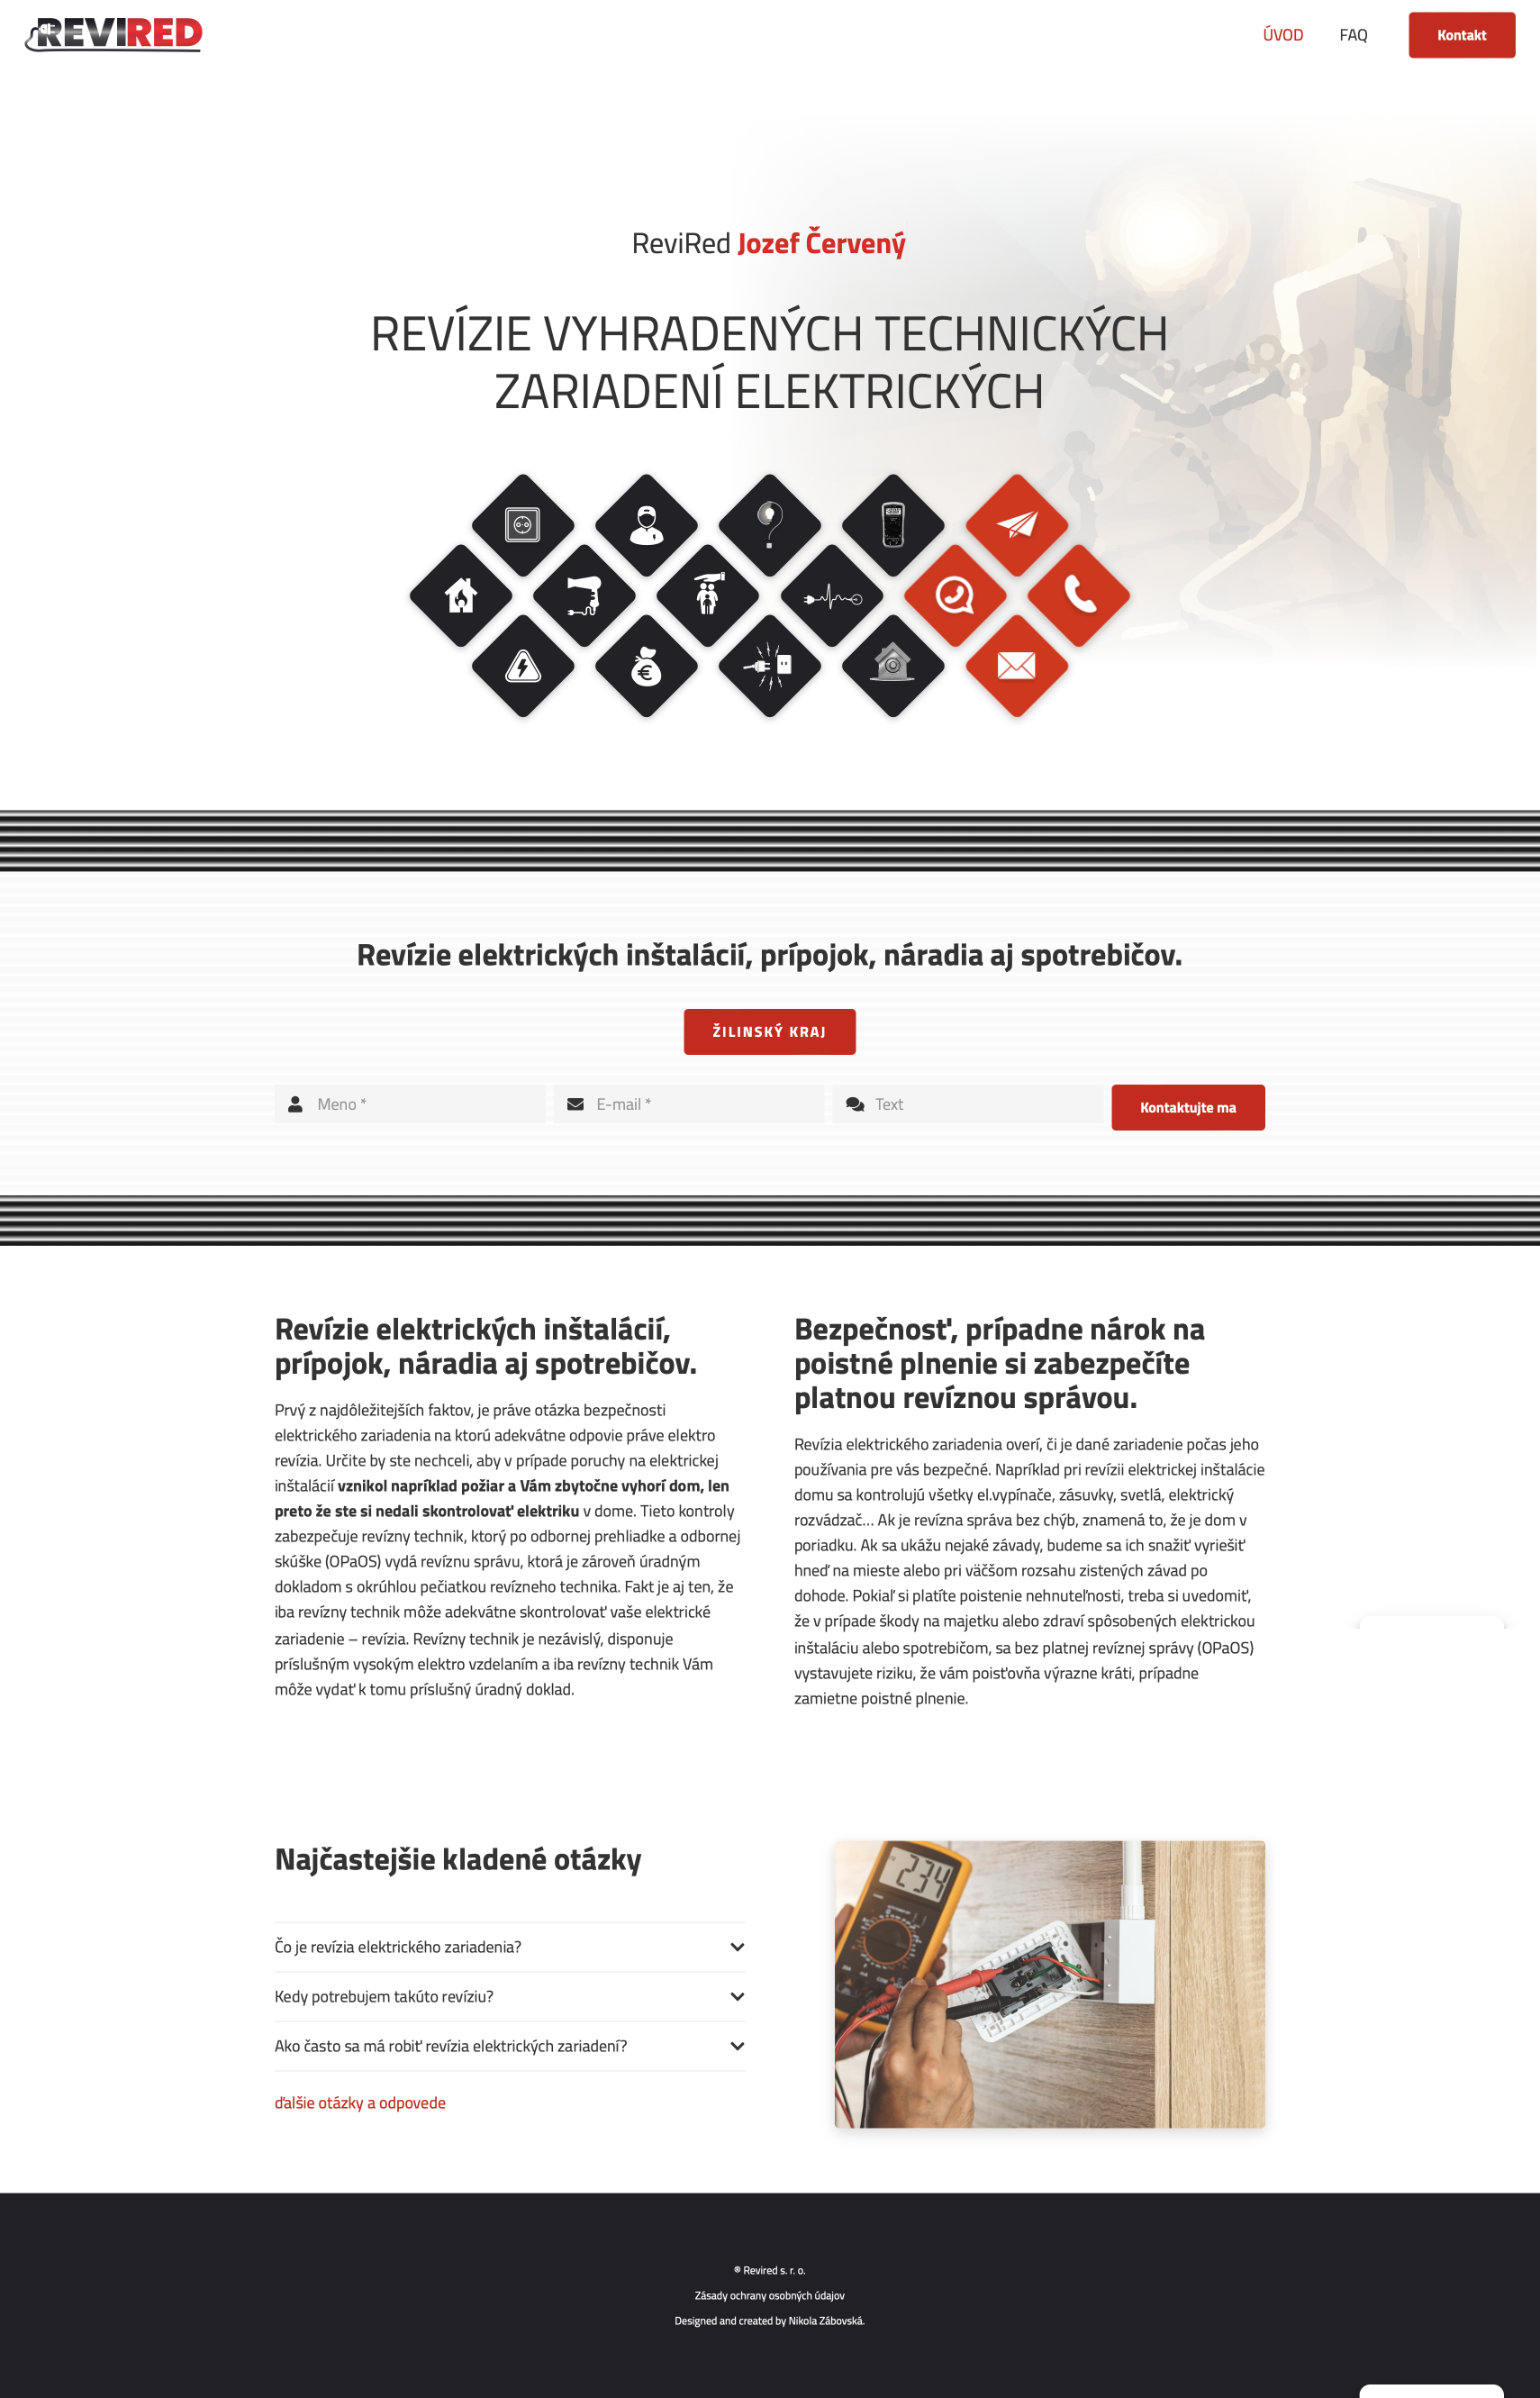 Webdizajn a tvorba webu pre firmu revired | nikolazabovska.sk